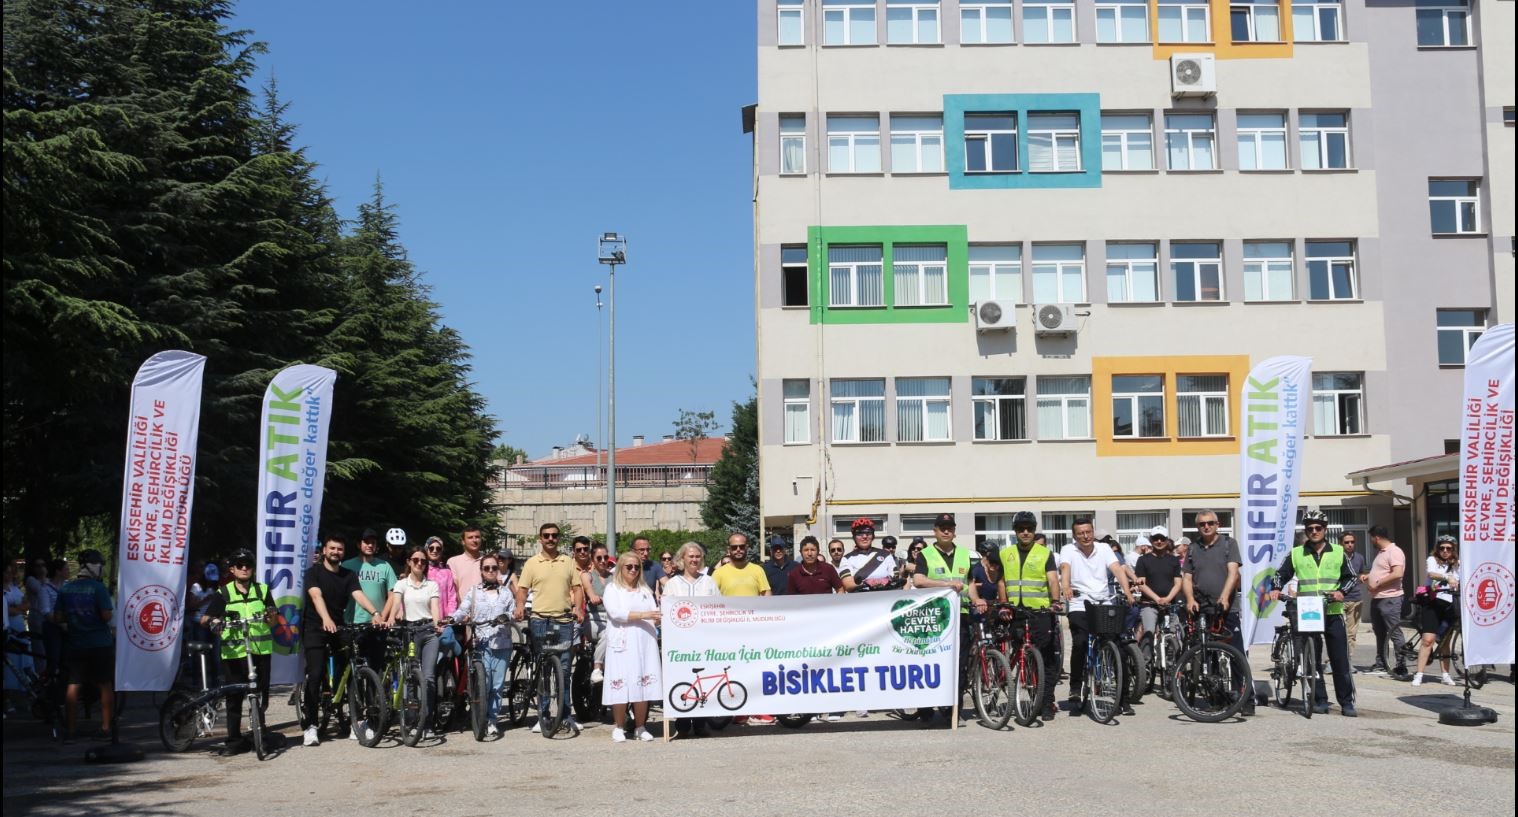 ‘Temiz Hava İçin Otomobilsiz Bir Gün’ temasıyla bisiklet turu düzenlendi